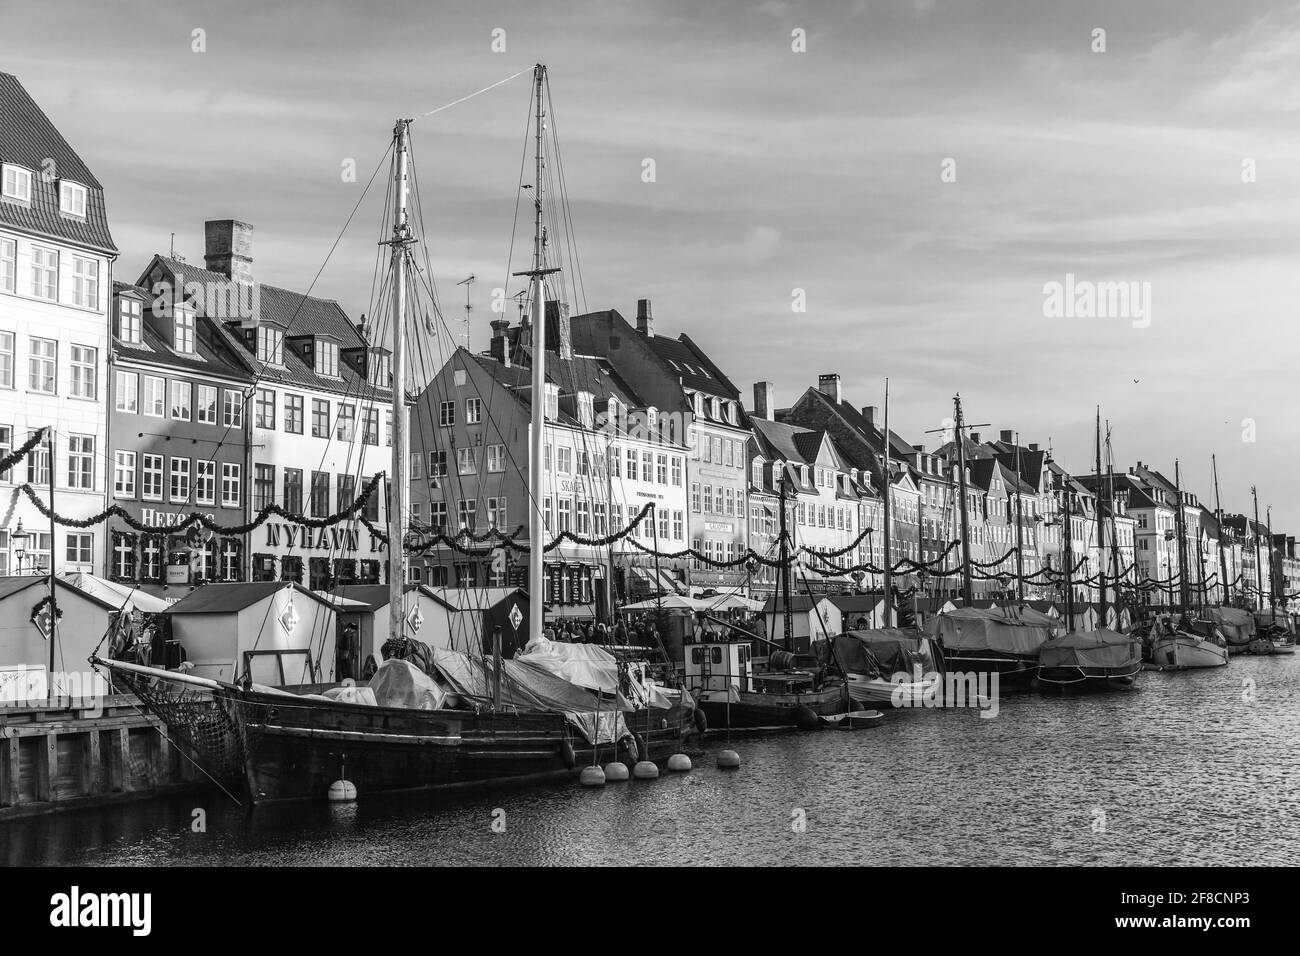 Kopenhagen, Dänemark - 9. Dezember 2017: Nyhavn oder New Harbour Blick mit alten Segelschiffen, es ist ein 17. Jahrhundert Waterfront, Kanal und beliebte touristi Stockfoto